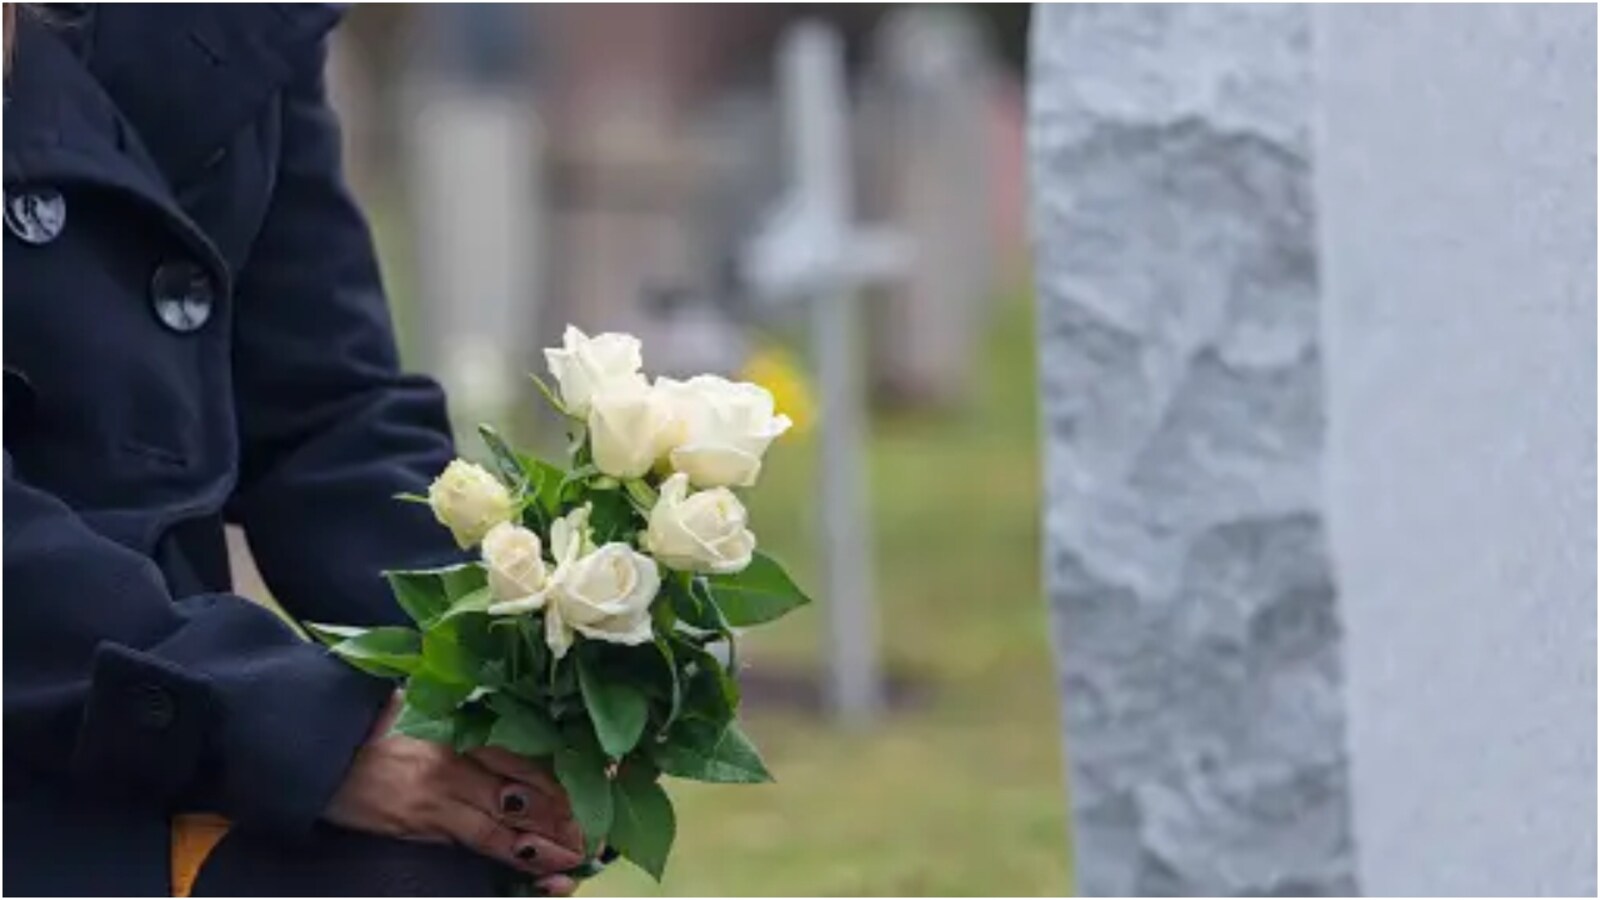 World's Oldest Man' Jose Paulino Gomes Dies At 127, Few Days